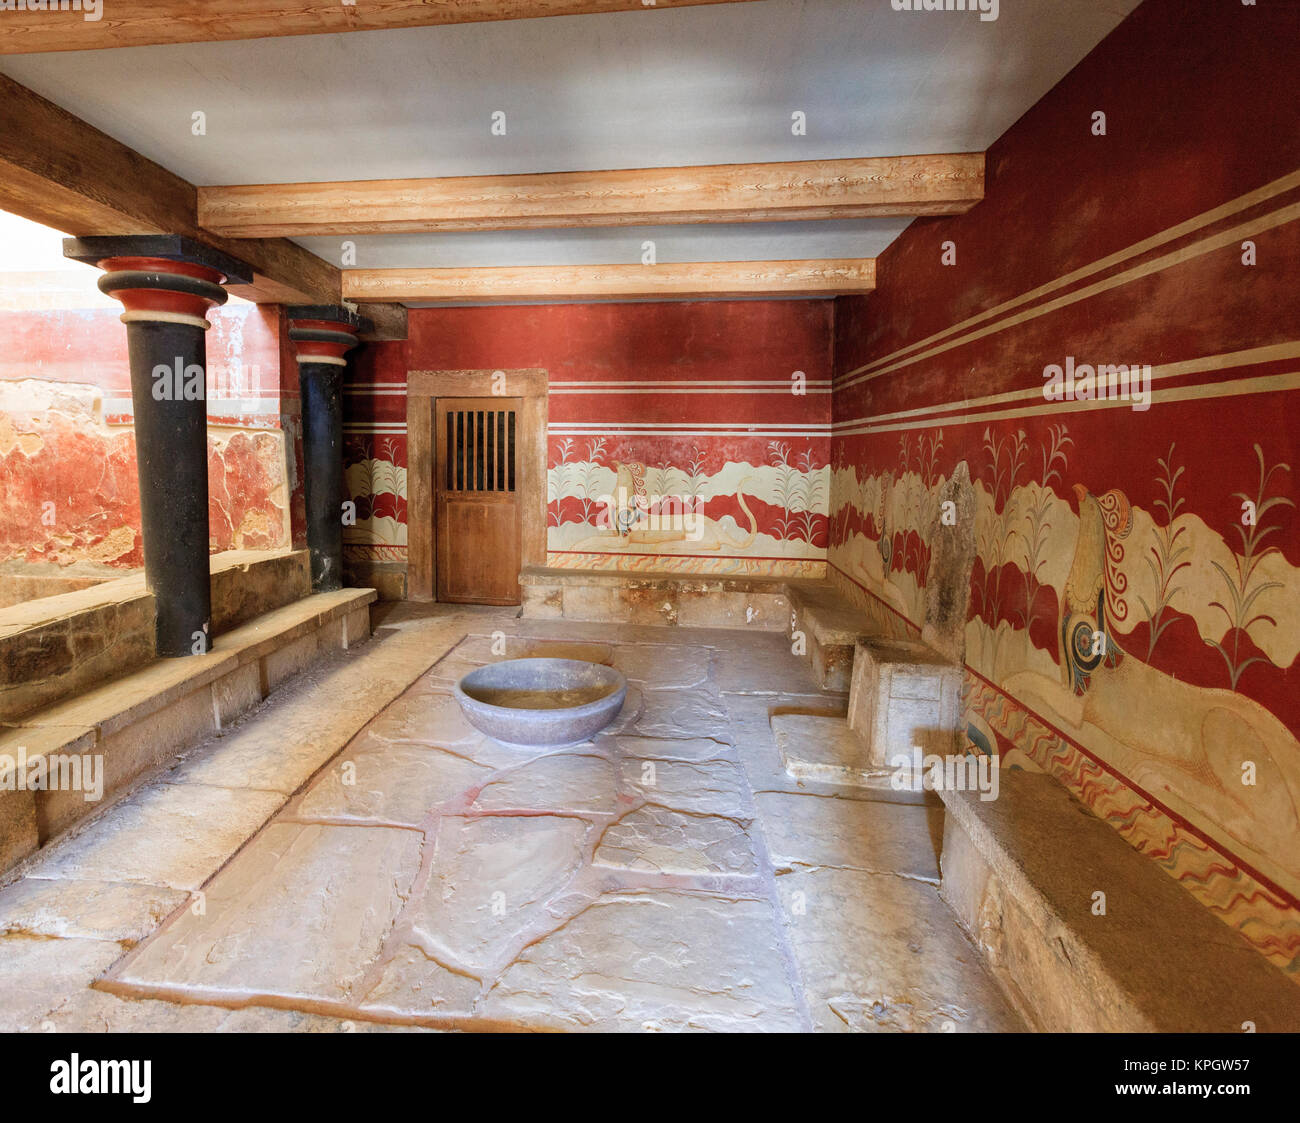 Die Königinnen, Badewanne. Der Palast von Knossos datiert auf 2000 v. Chr. gilt als älteste Stadt Europas zu sein. Kreta. Griechenland. Stockfoto